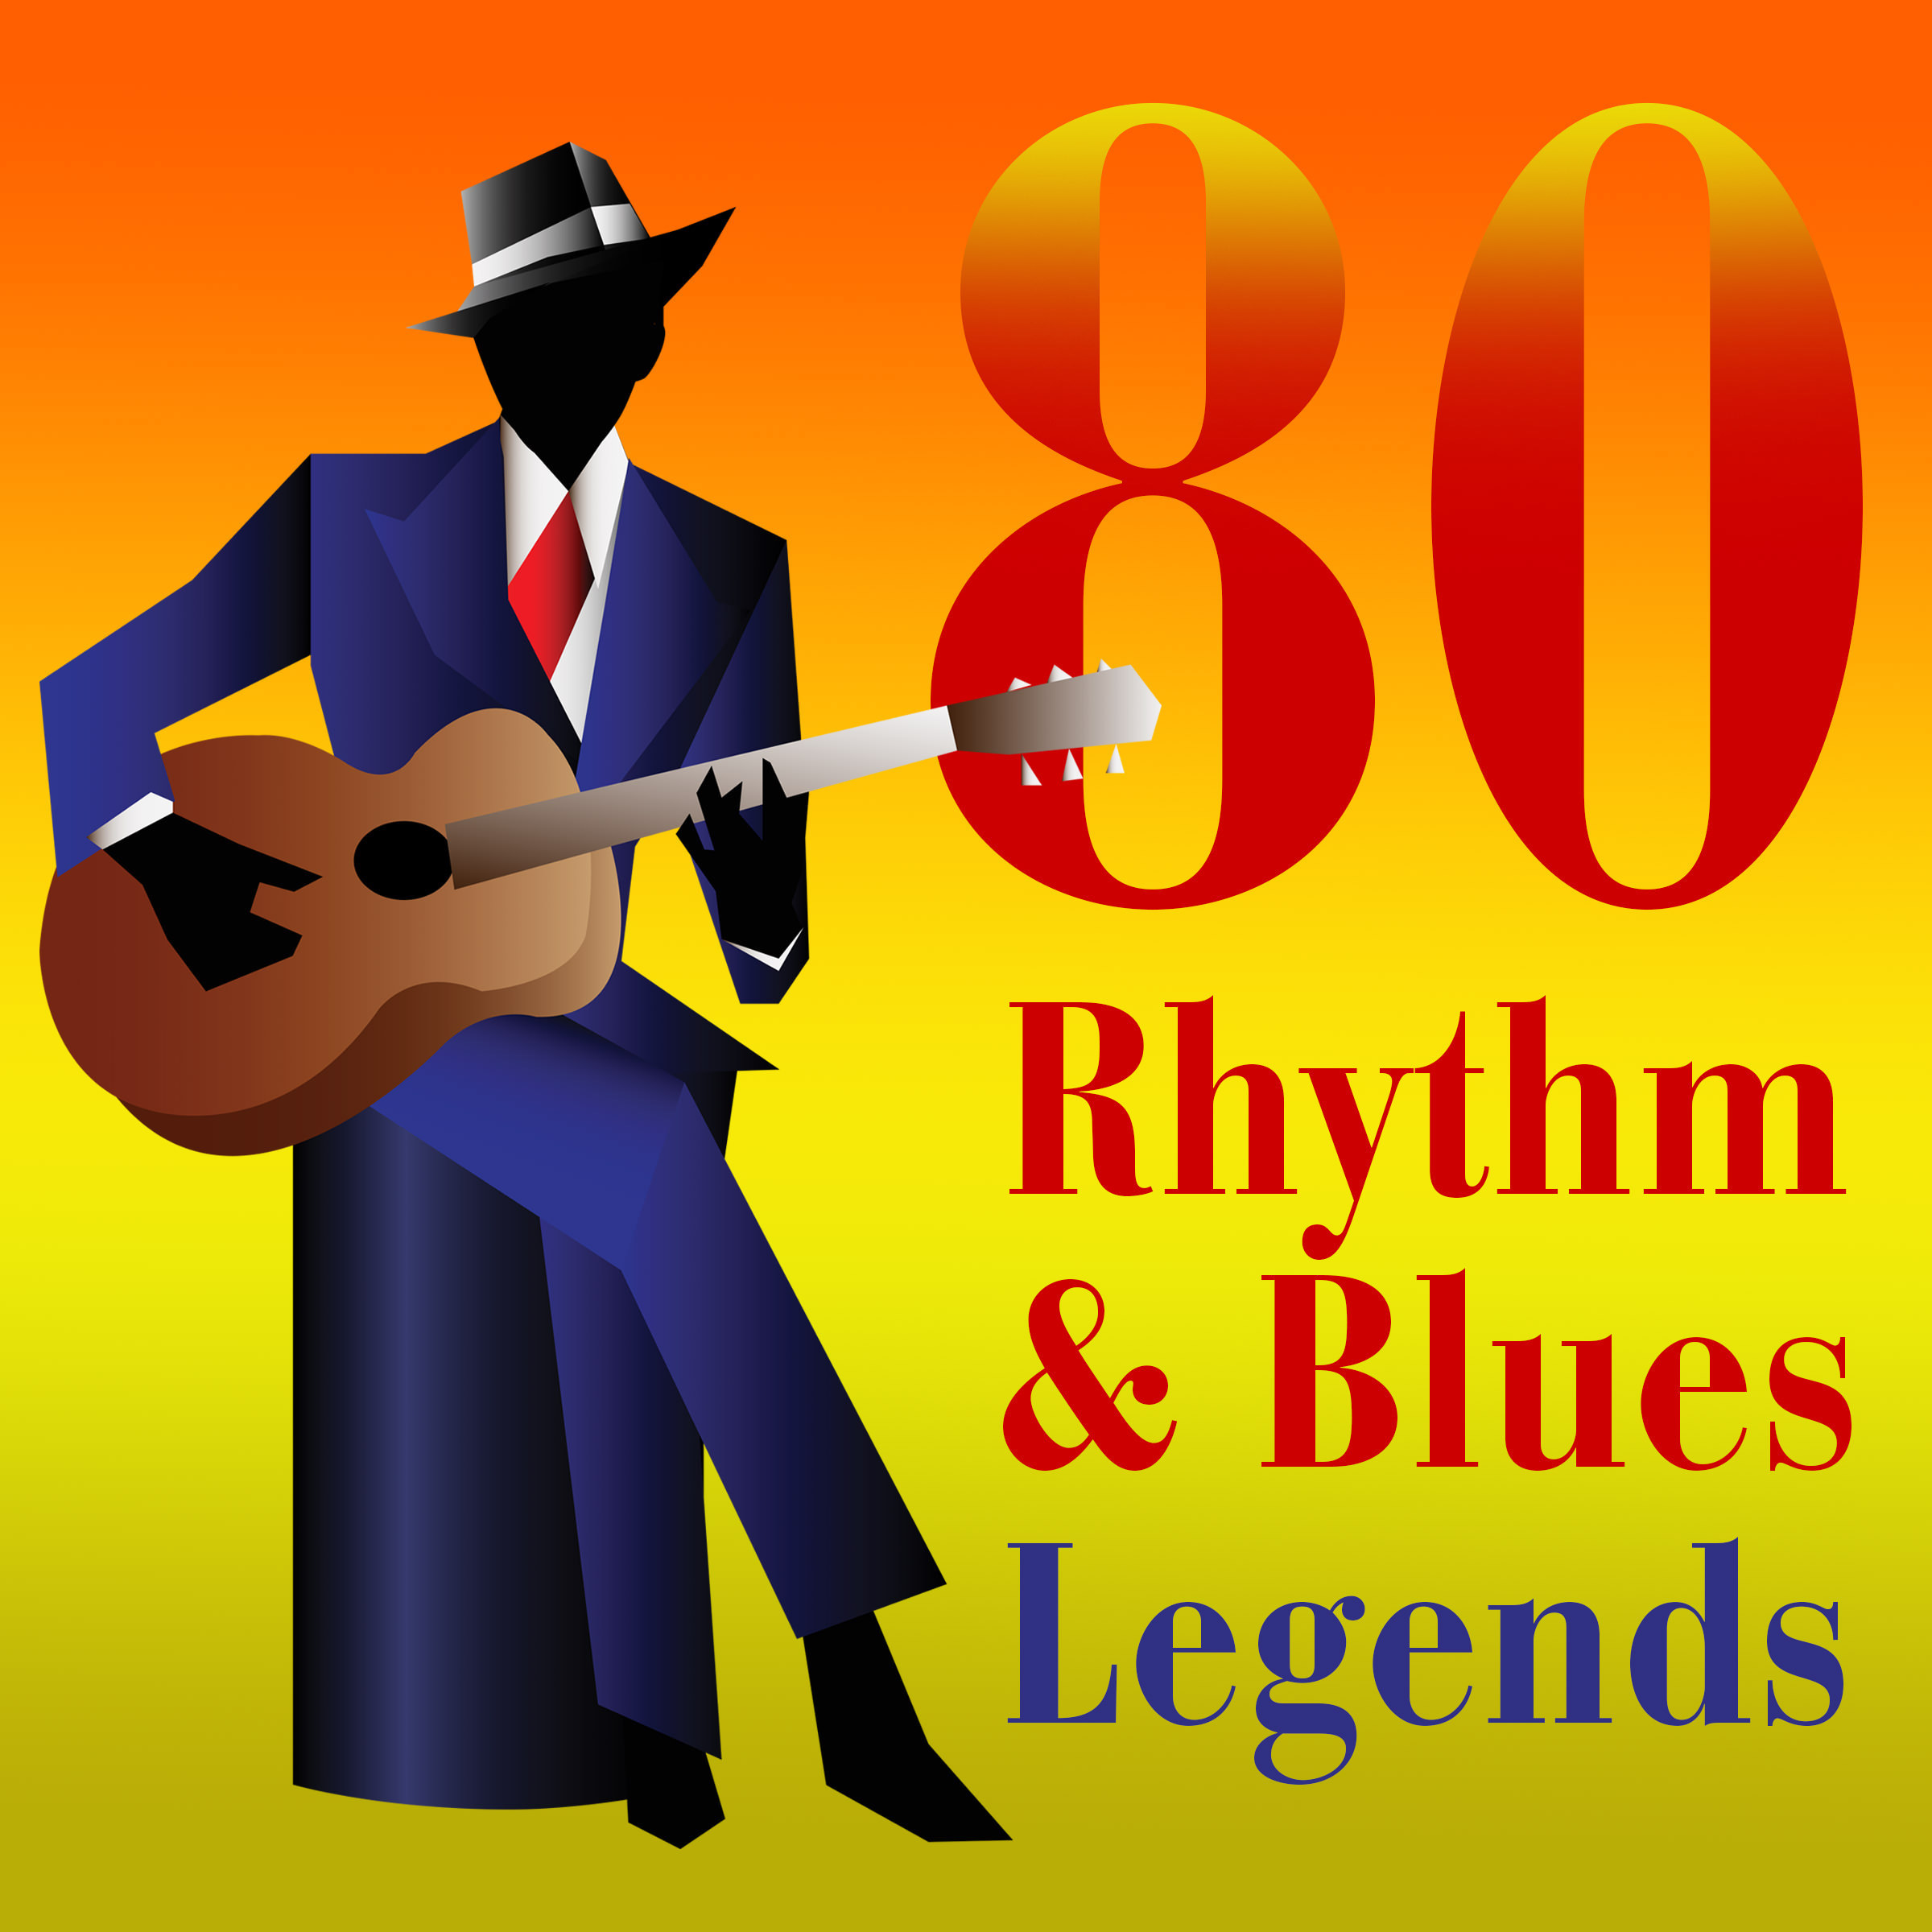 80 Legends Of Rhythm & Blues